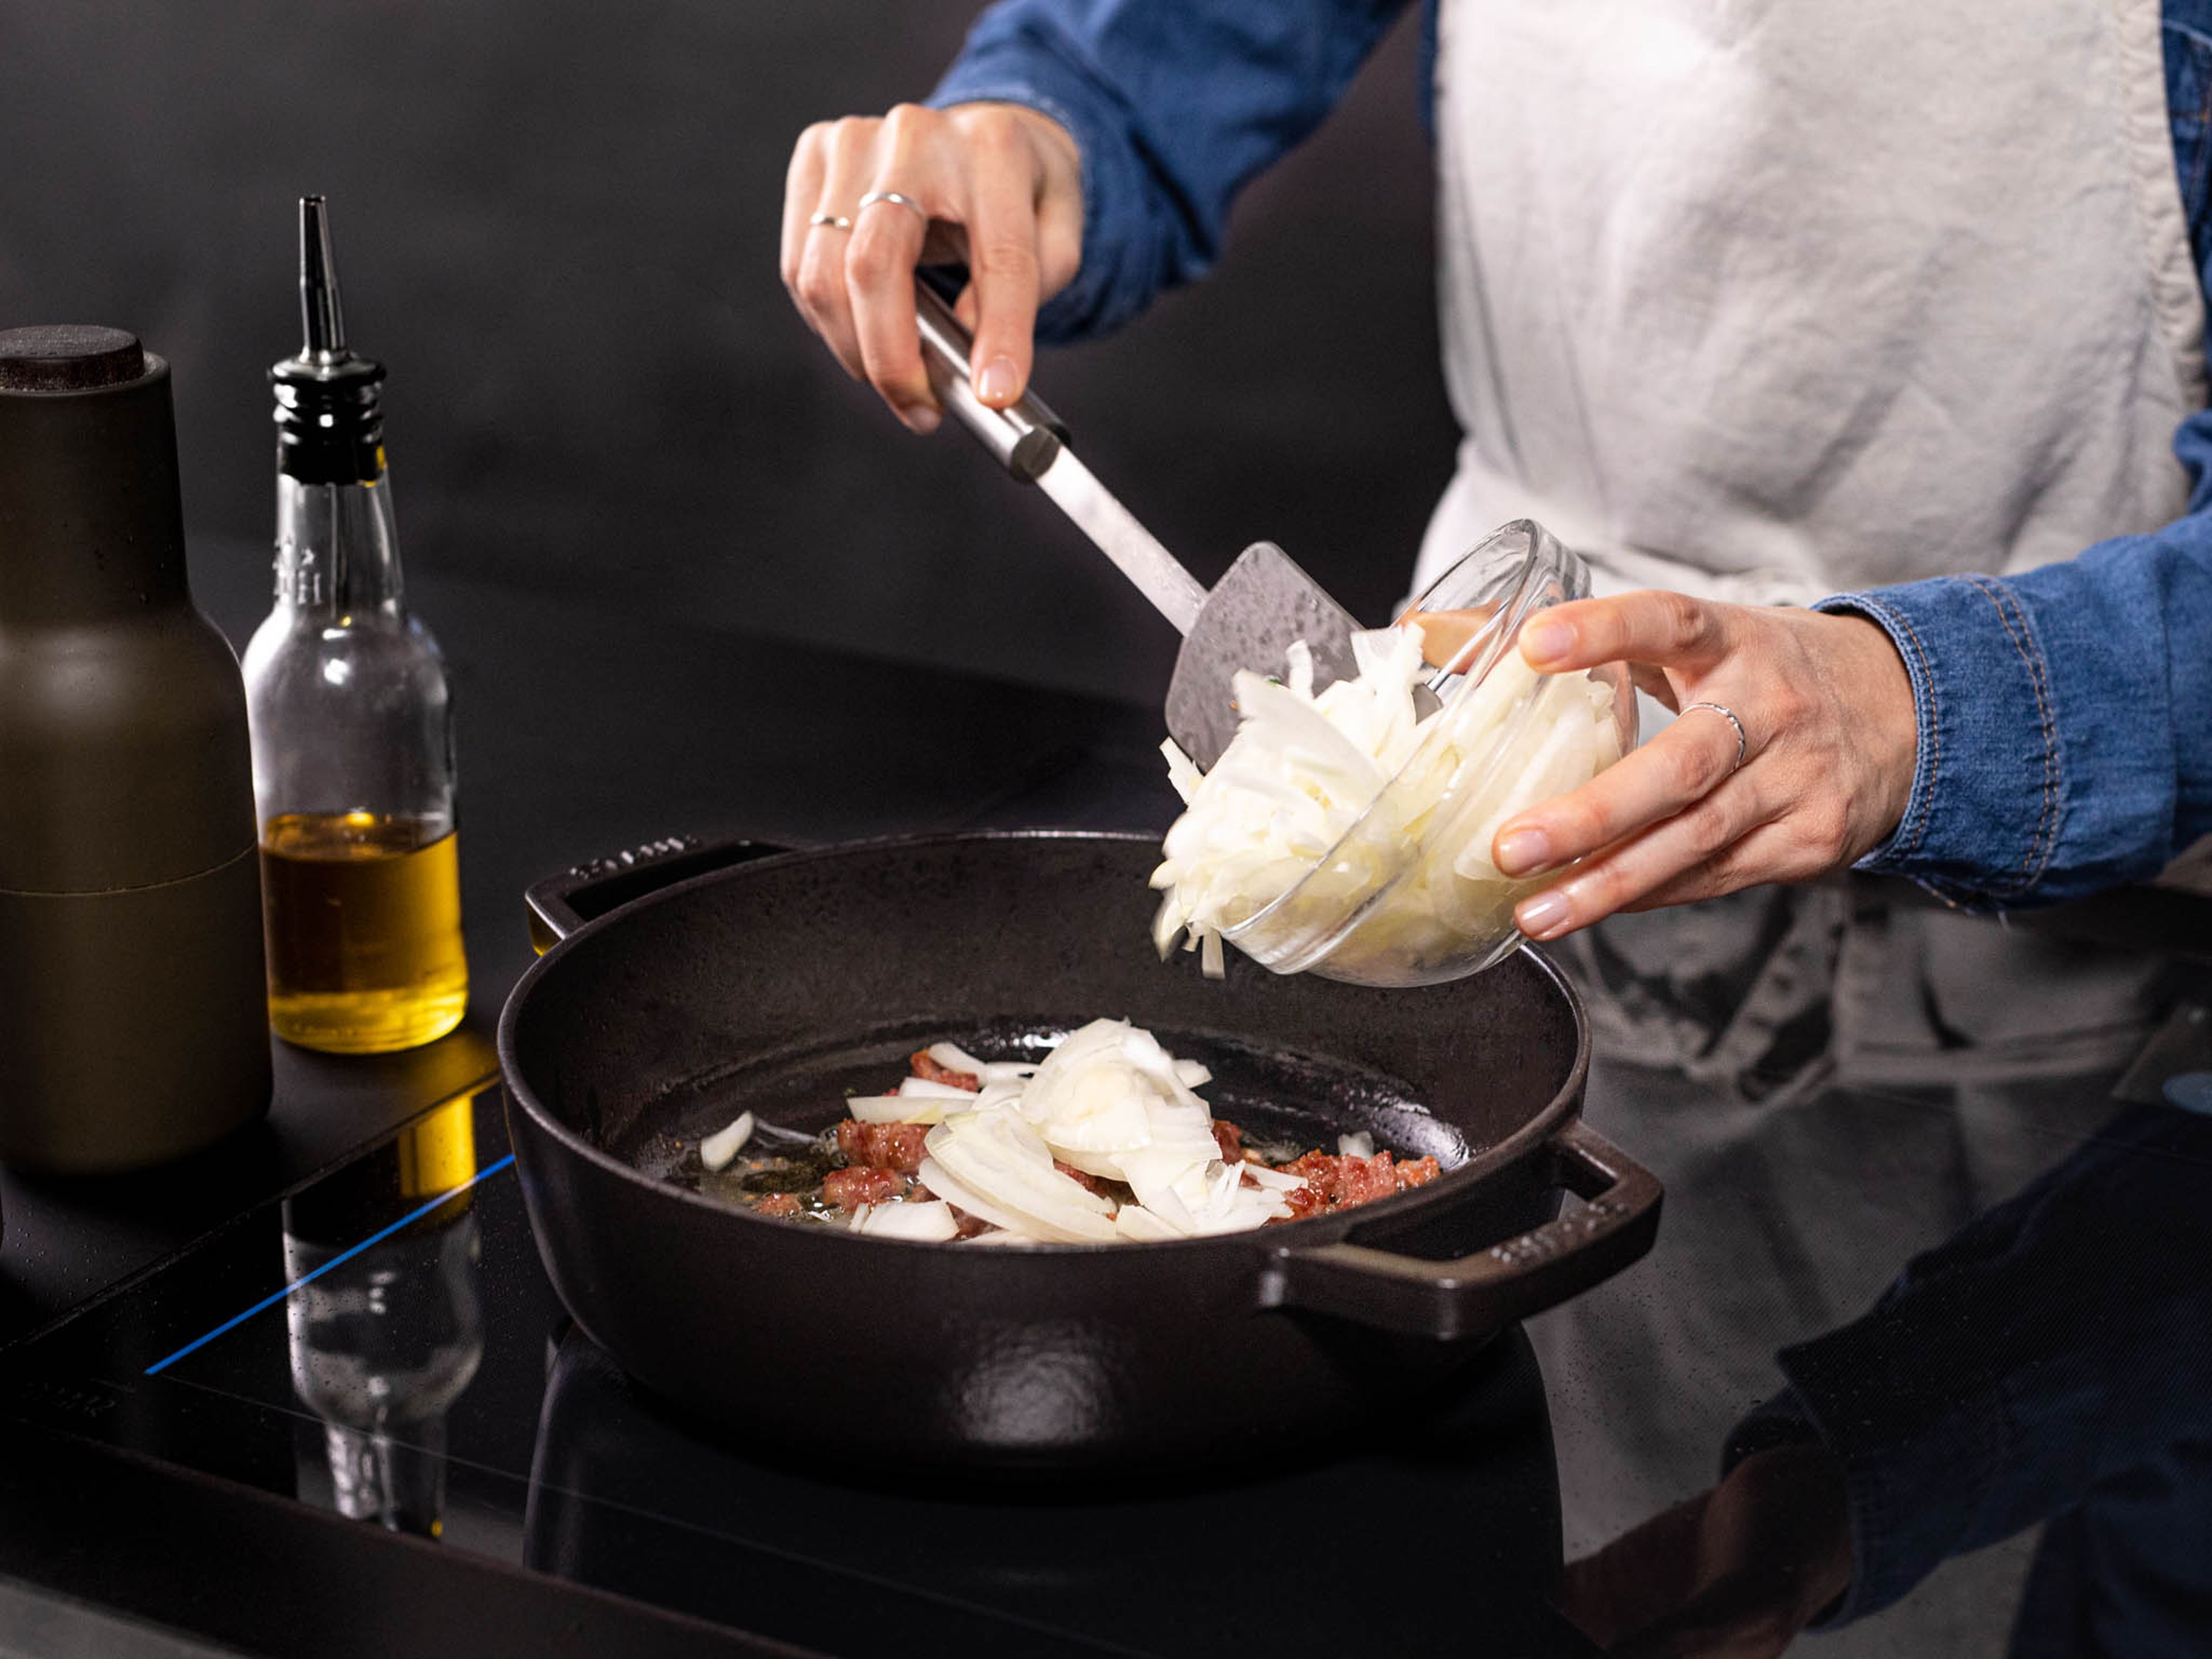 Etwas Olivenöl in eine ofenfeste Pfanne geben und auf mittlerer bis hoher Stufe erhitzen. Die Wurst zugeben und für ca. 8 Min. anbraten. Jetzt die Zwiebeln hinzufügen und unter häufigem Rühren ca. 15 Min. garen, oder bis die Zwiebeln anfangen zu karamellisieren. Mit Salz und Pfeffer abschmecken.